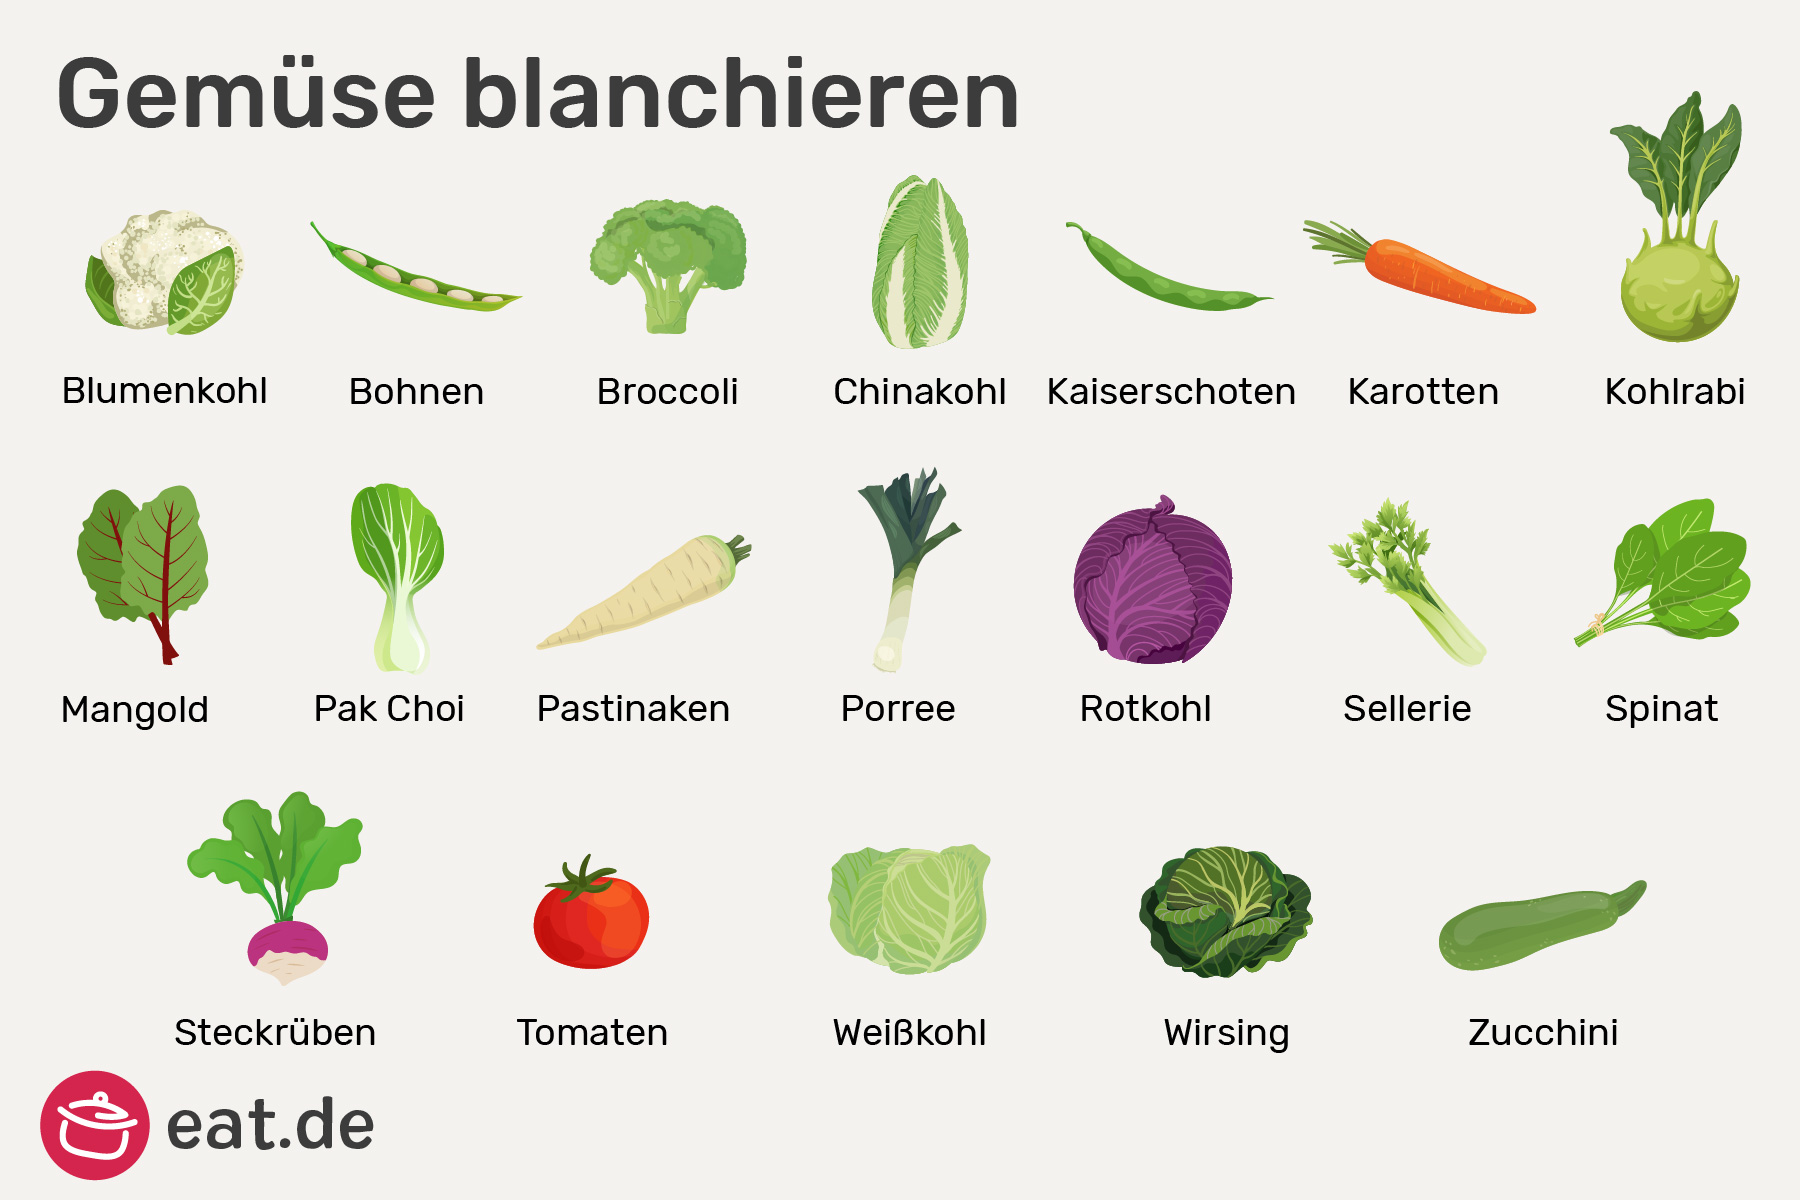 Gemüse blanchieren